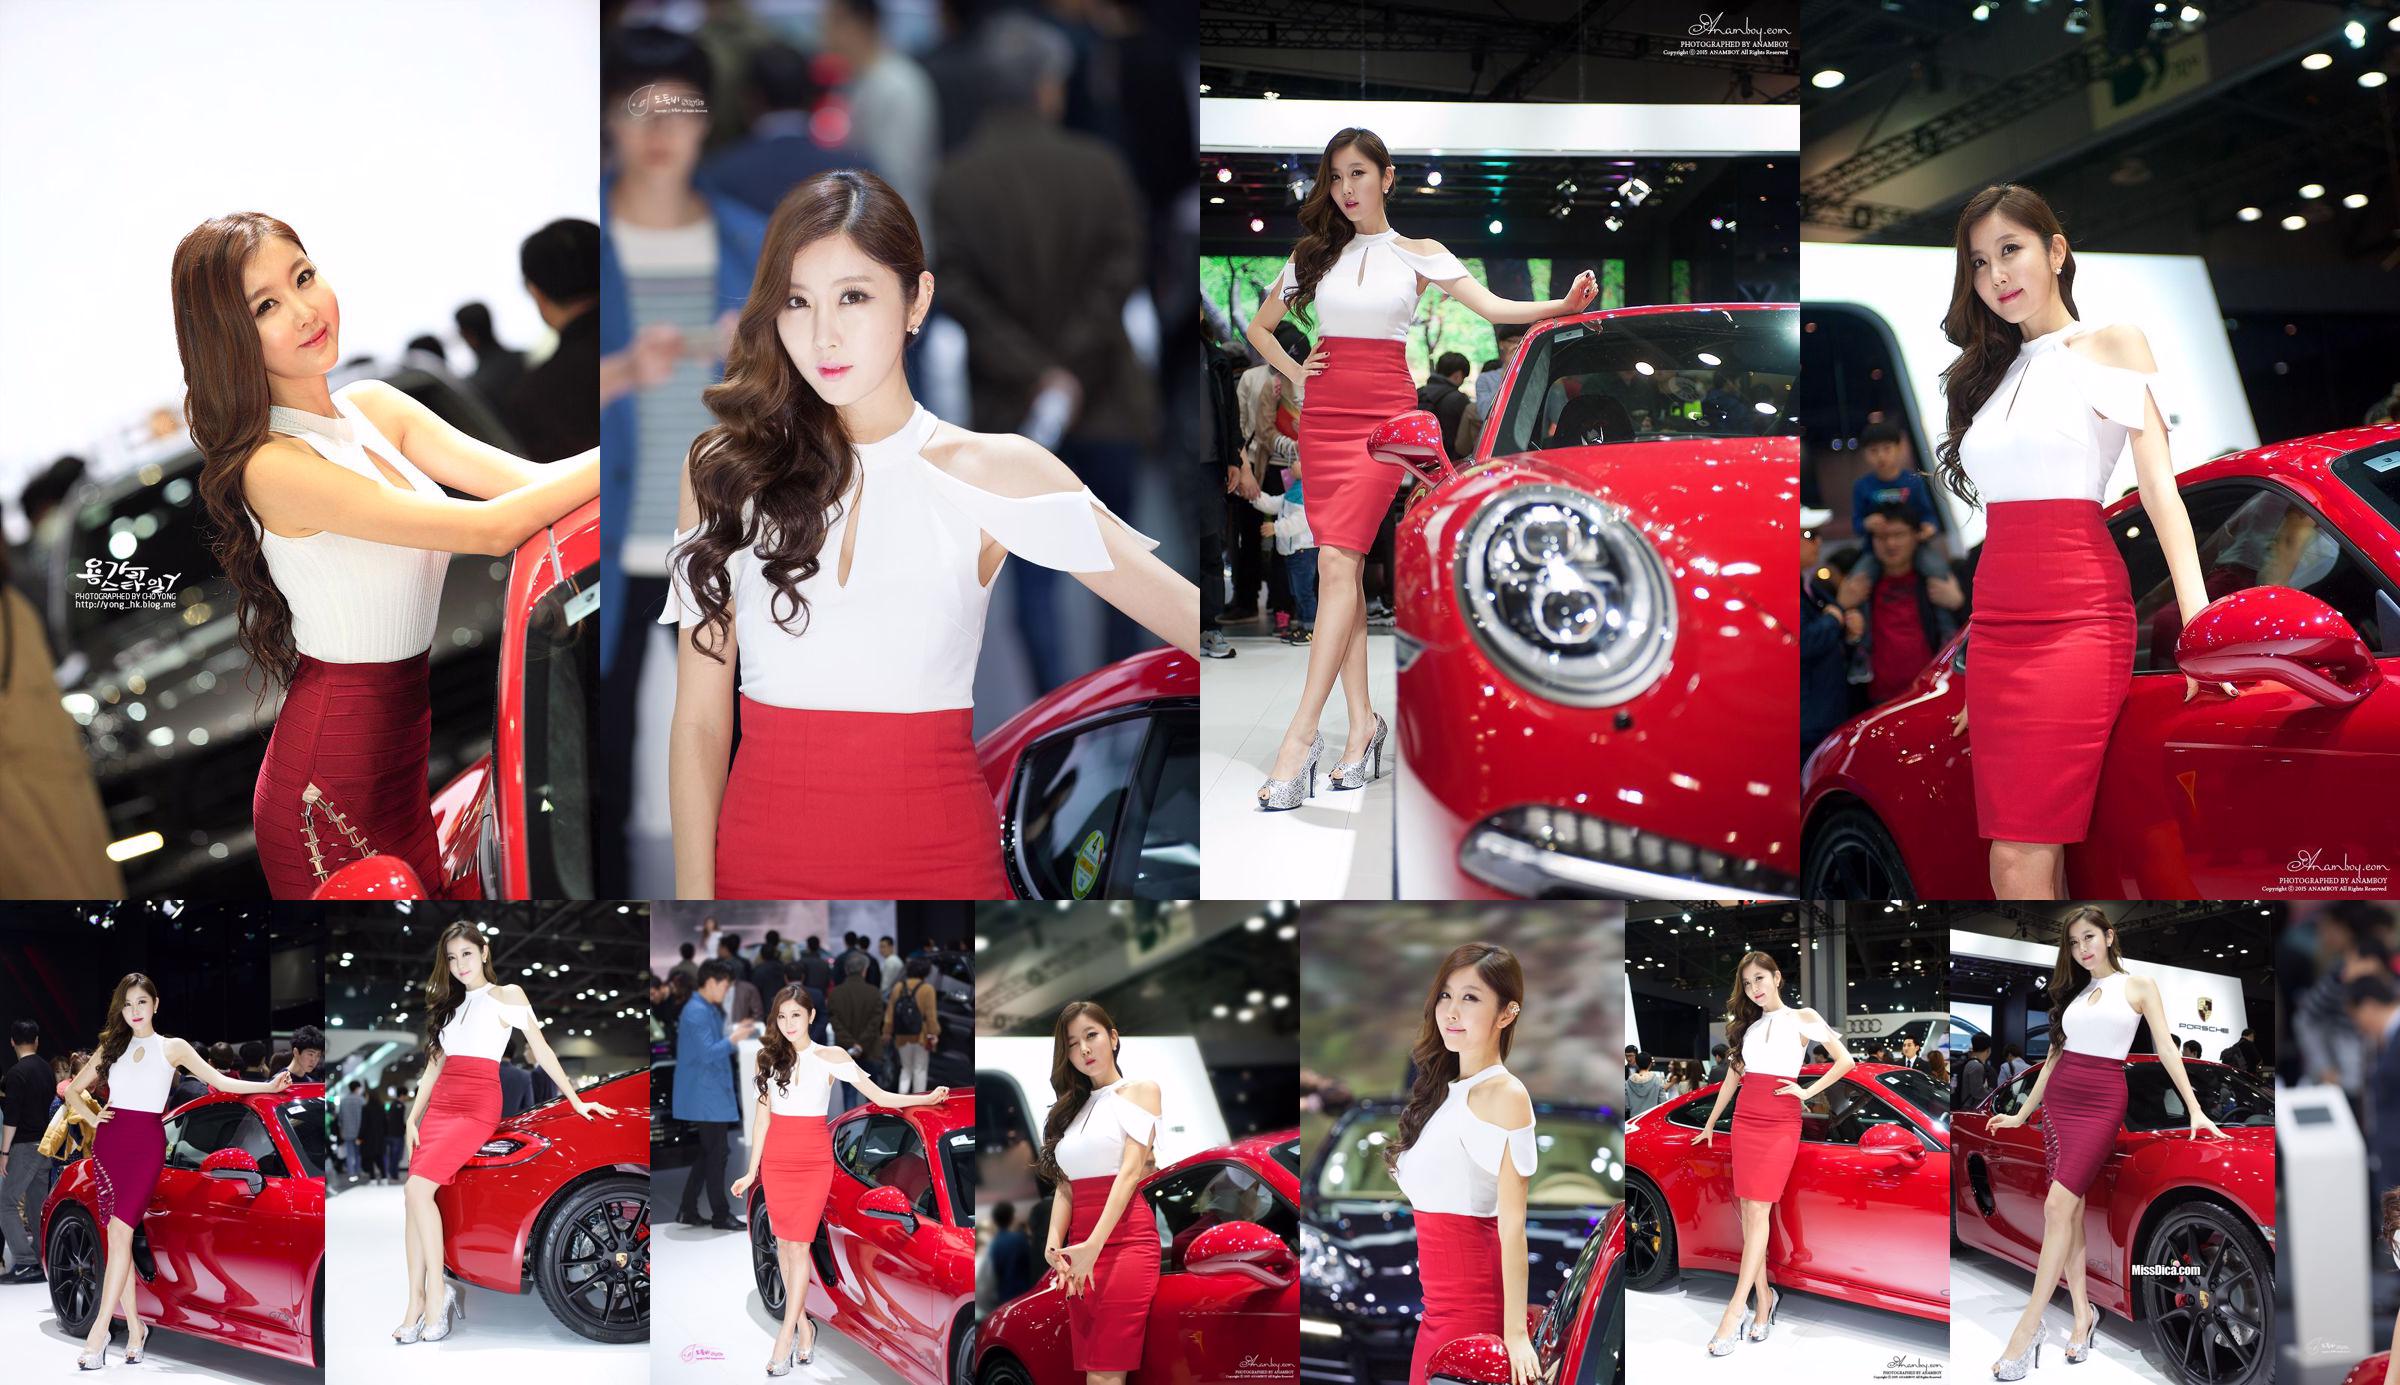 รวมภาพรถเกาหลีรุ่น Cui Xingya / "Red Skirt Series ของ Cui Xinger ที่งานออโต้โชว์" No.a7c3b4 หน้า 13